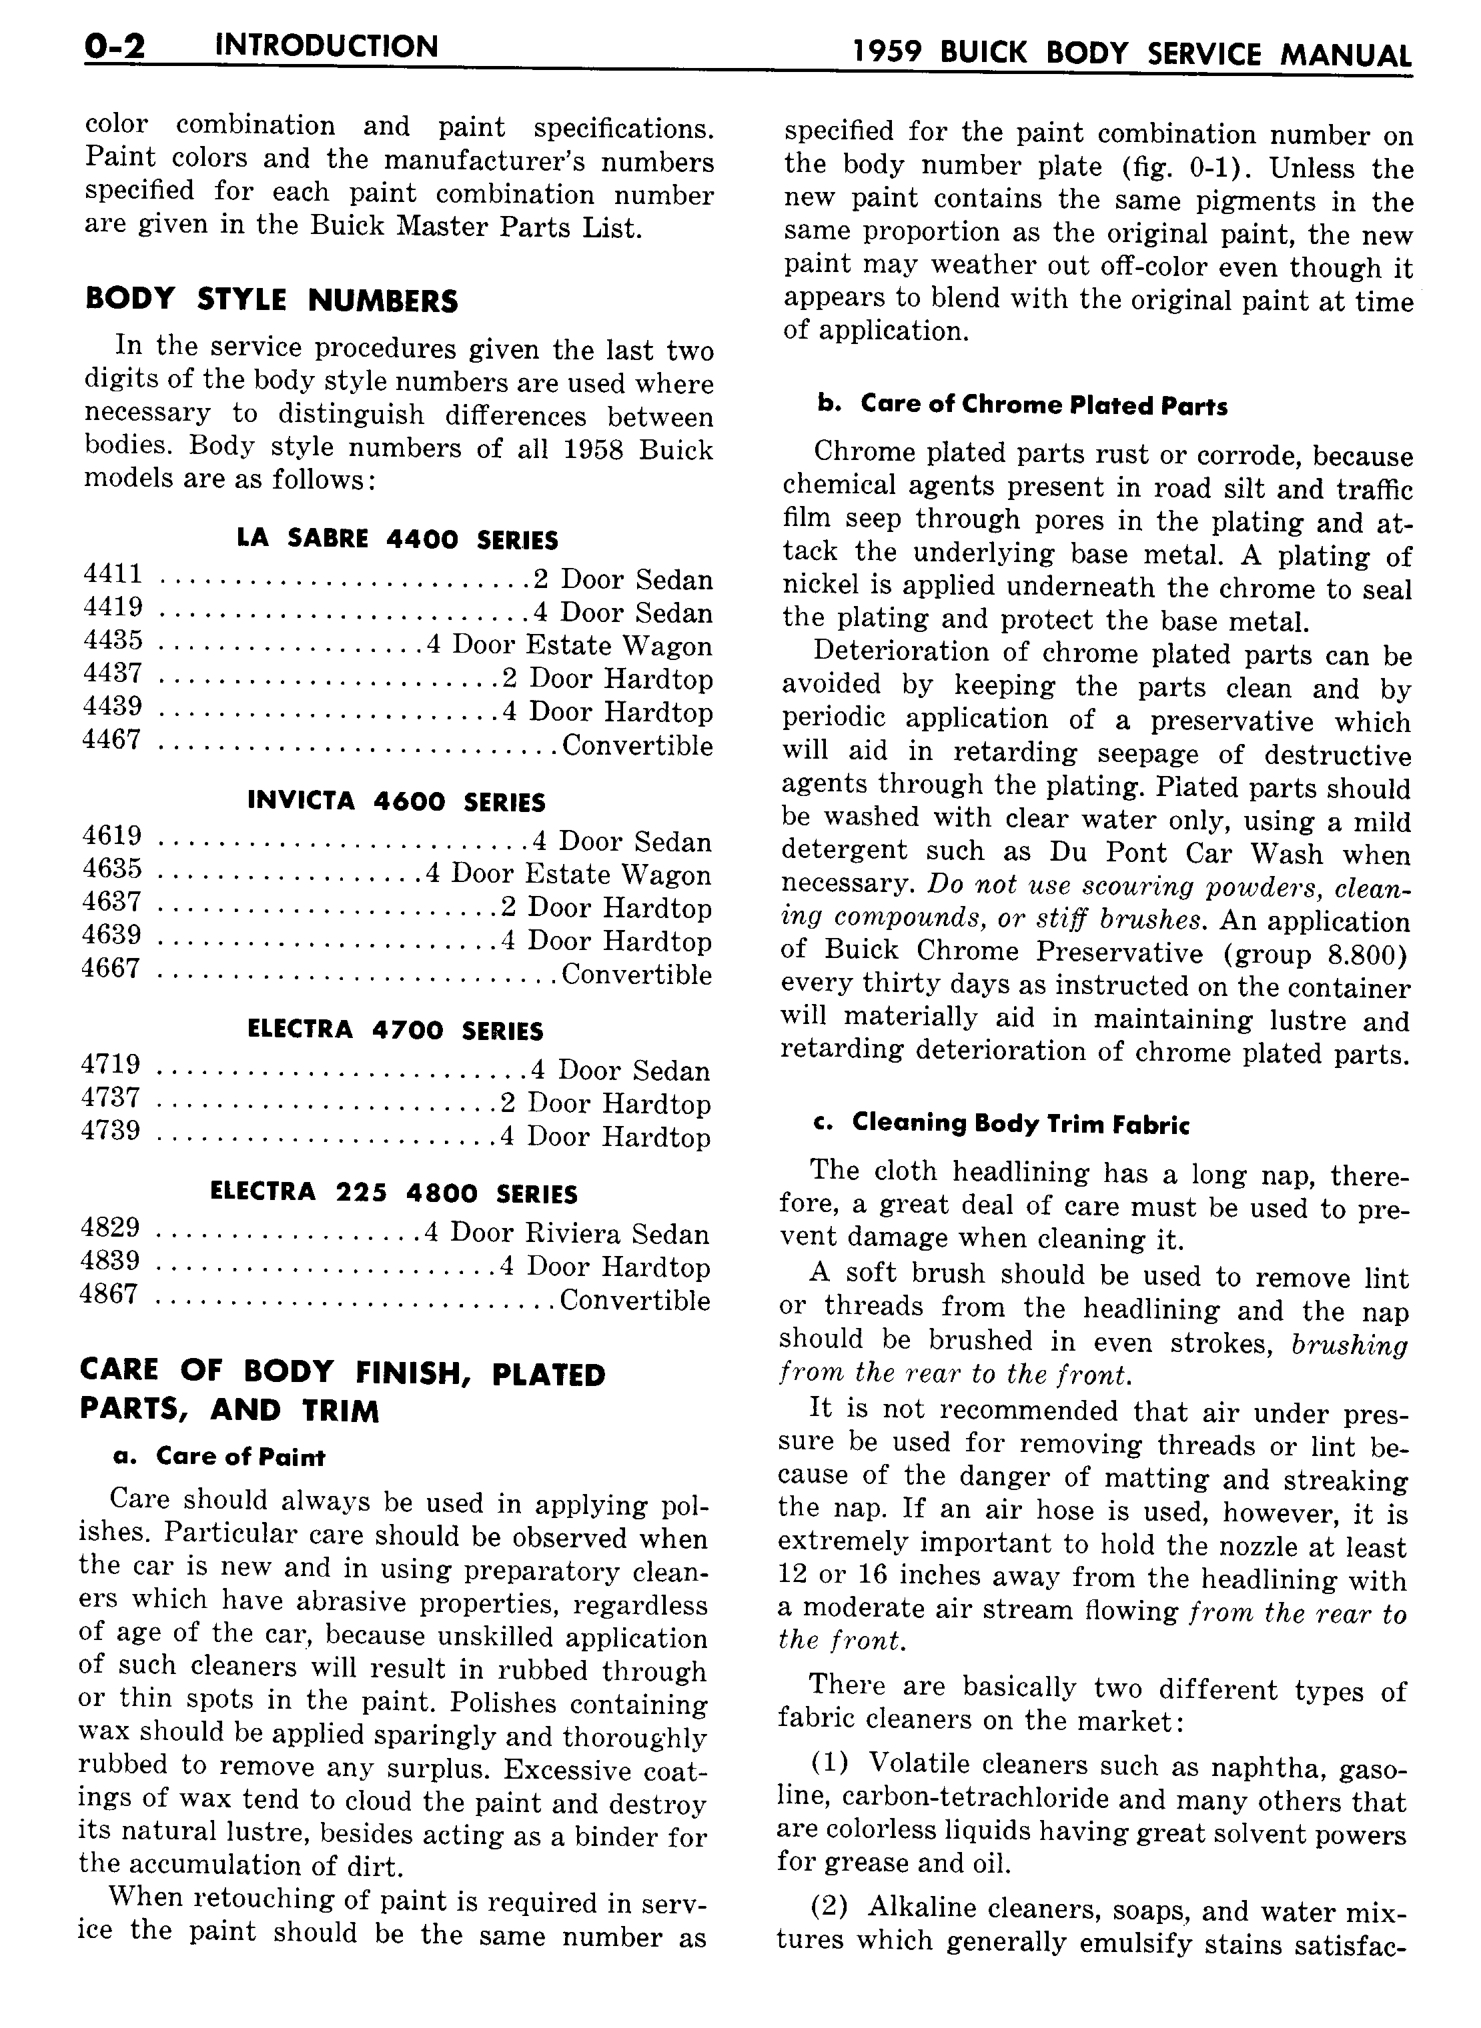 n_01 1959 Buick Body Service-Gen Information_4.jpg